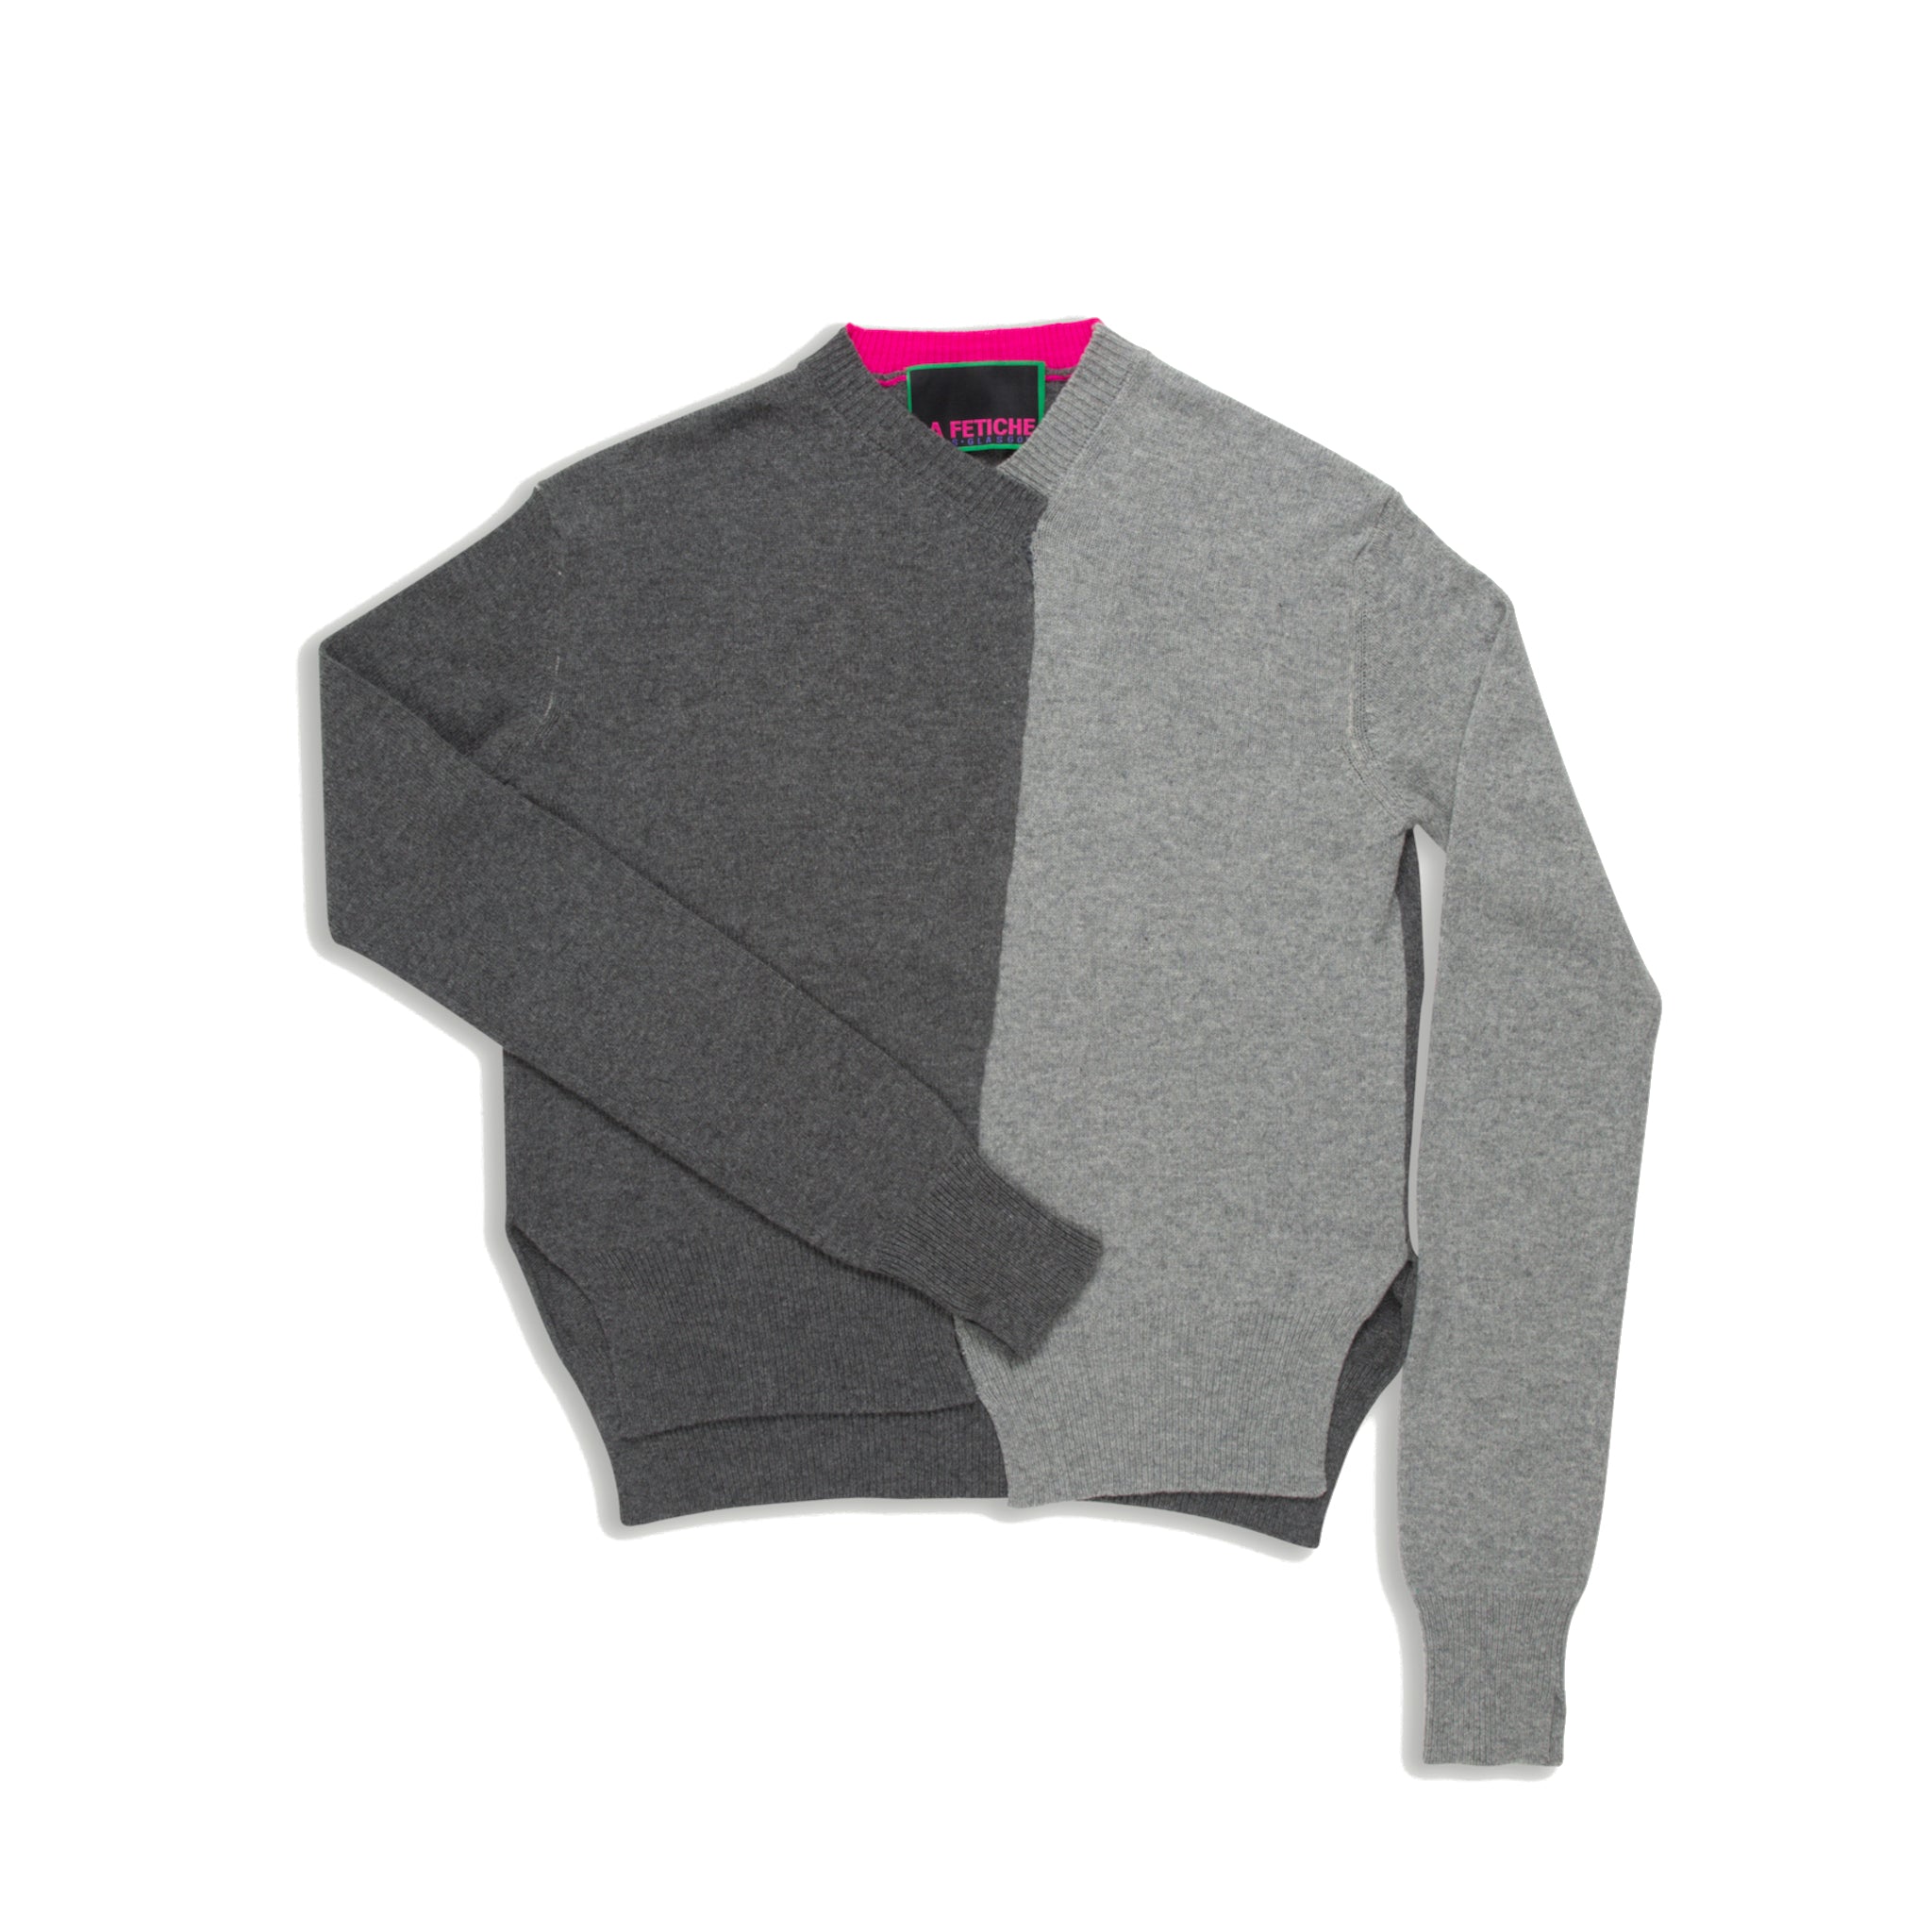 La Fetiche William Sweater - Grey-La Fetiche Archive-W2 Store